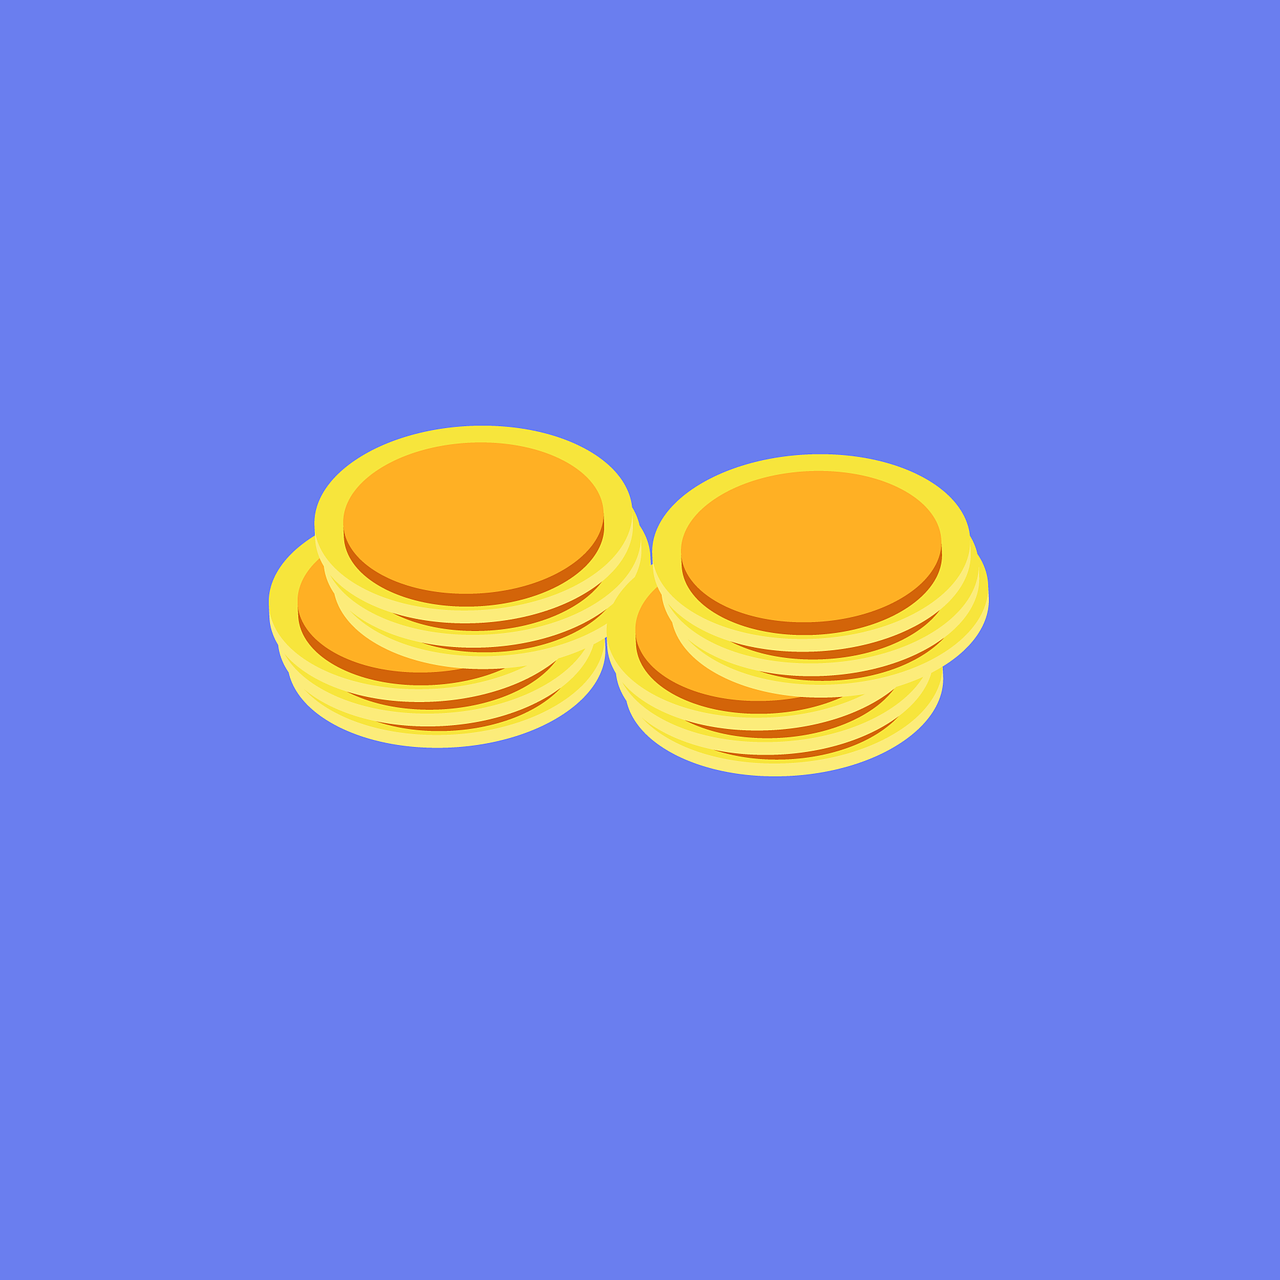 bitcoin coin coins free photo